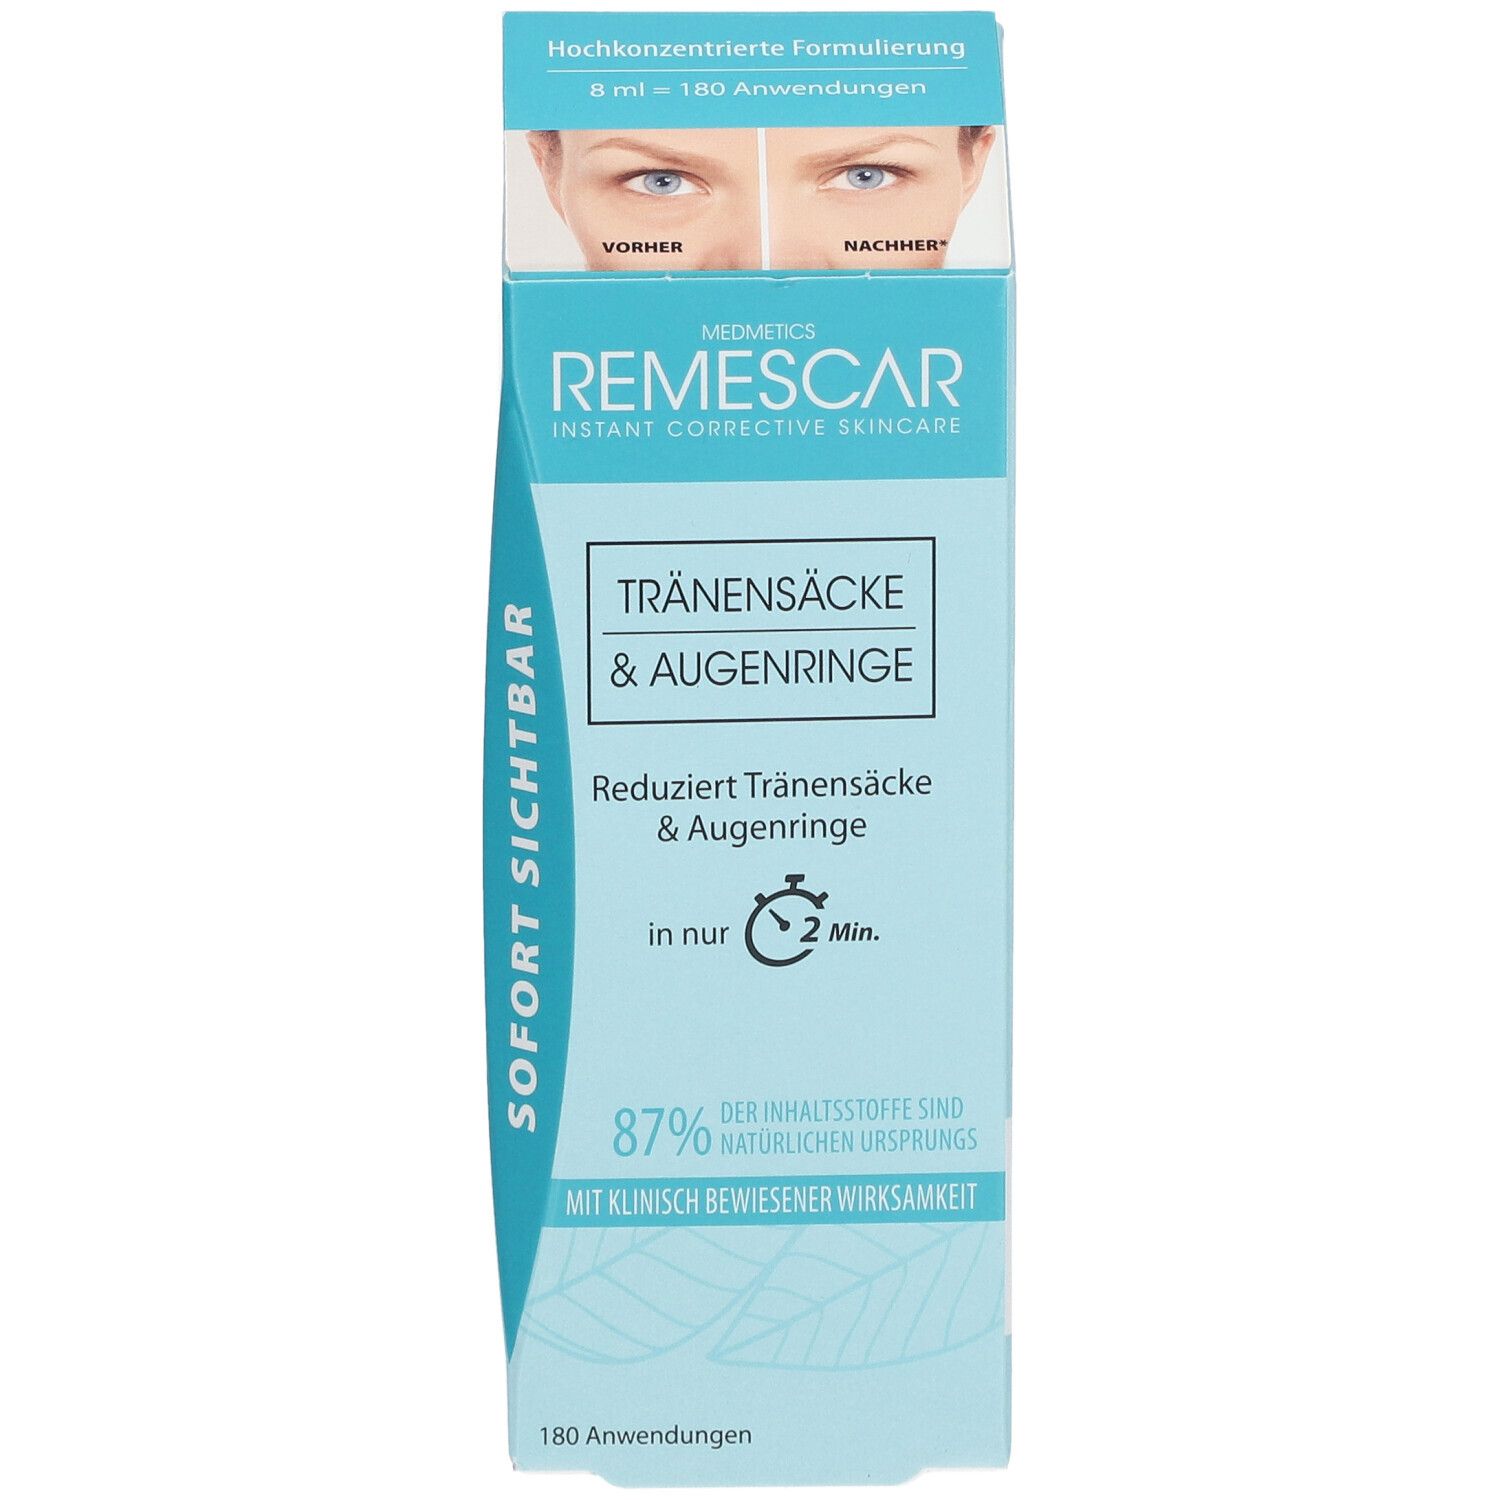 Remescar Tränensäcke & Augenringe